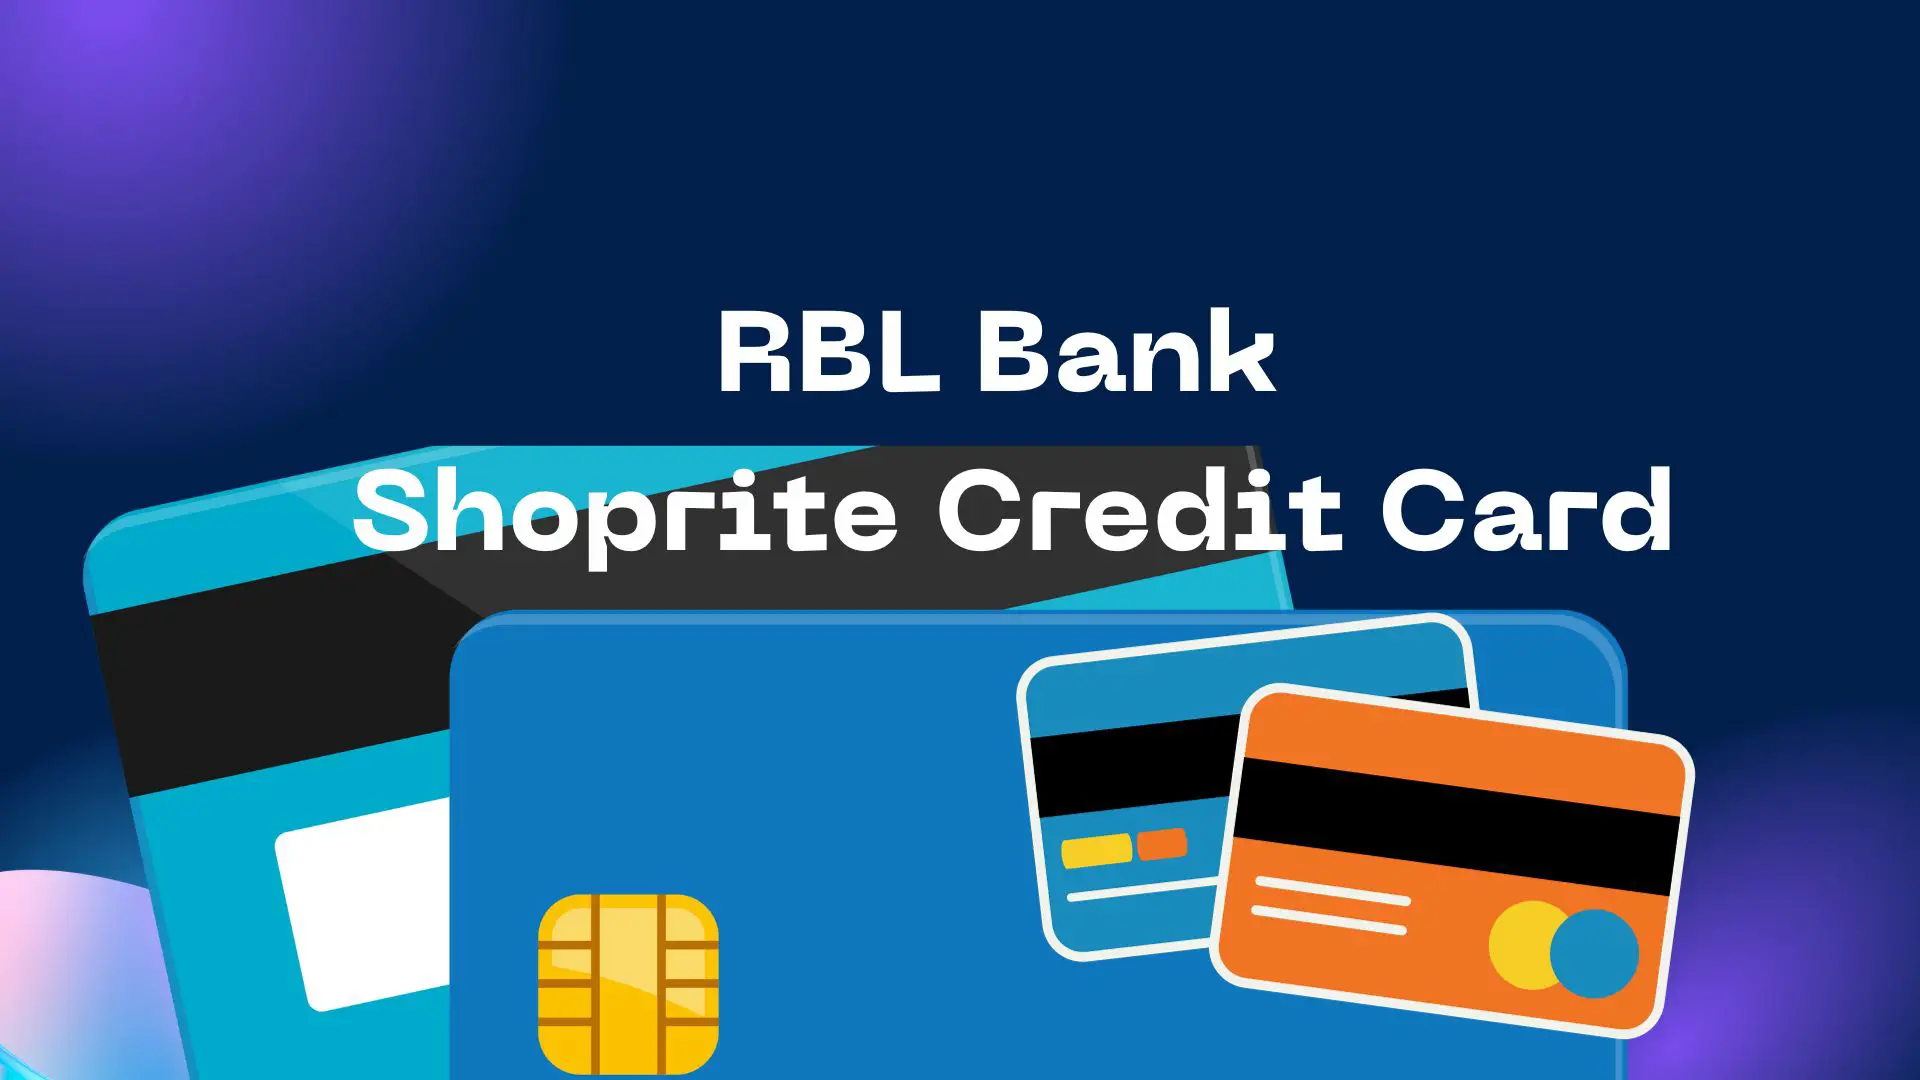 RBL Bank Shoprite Credit Card